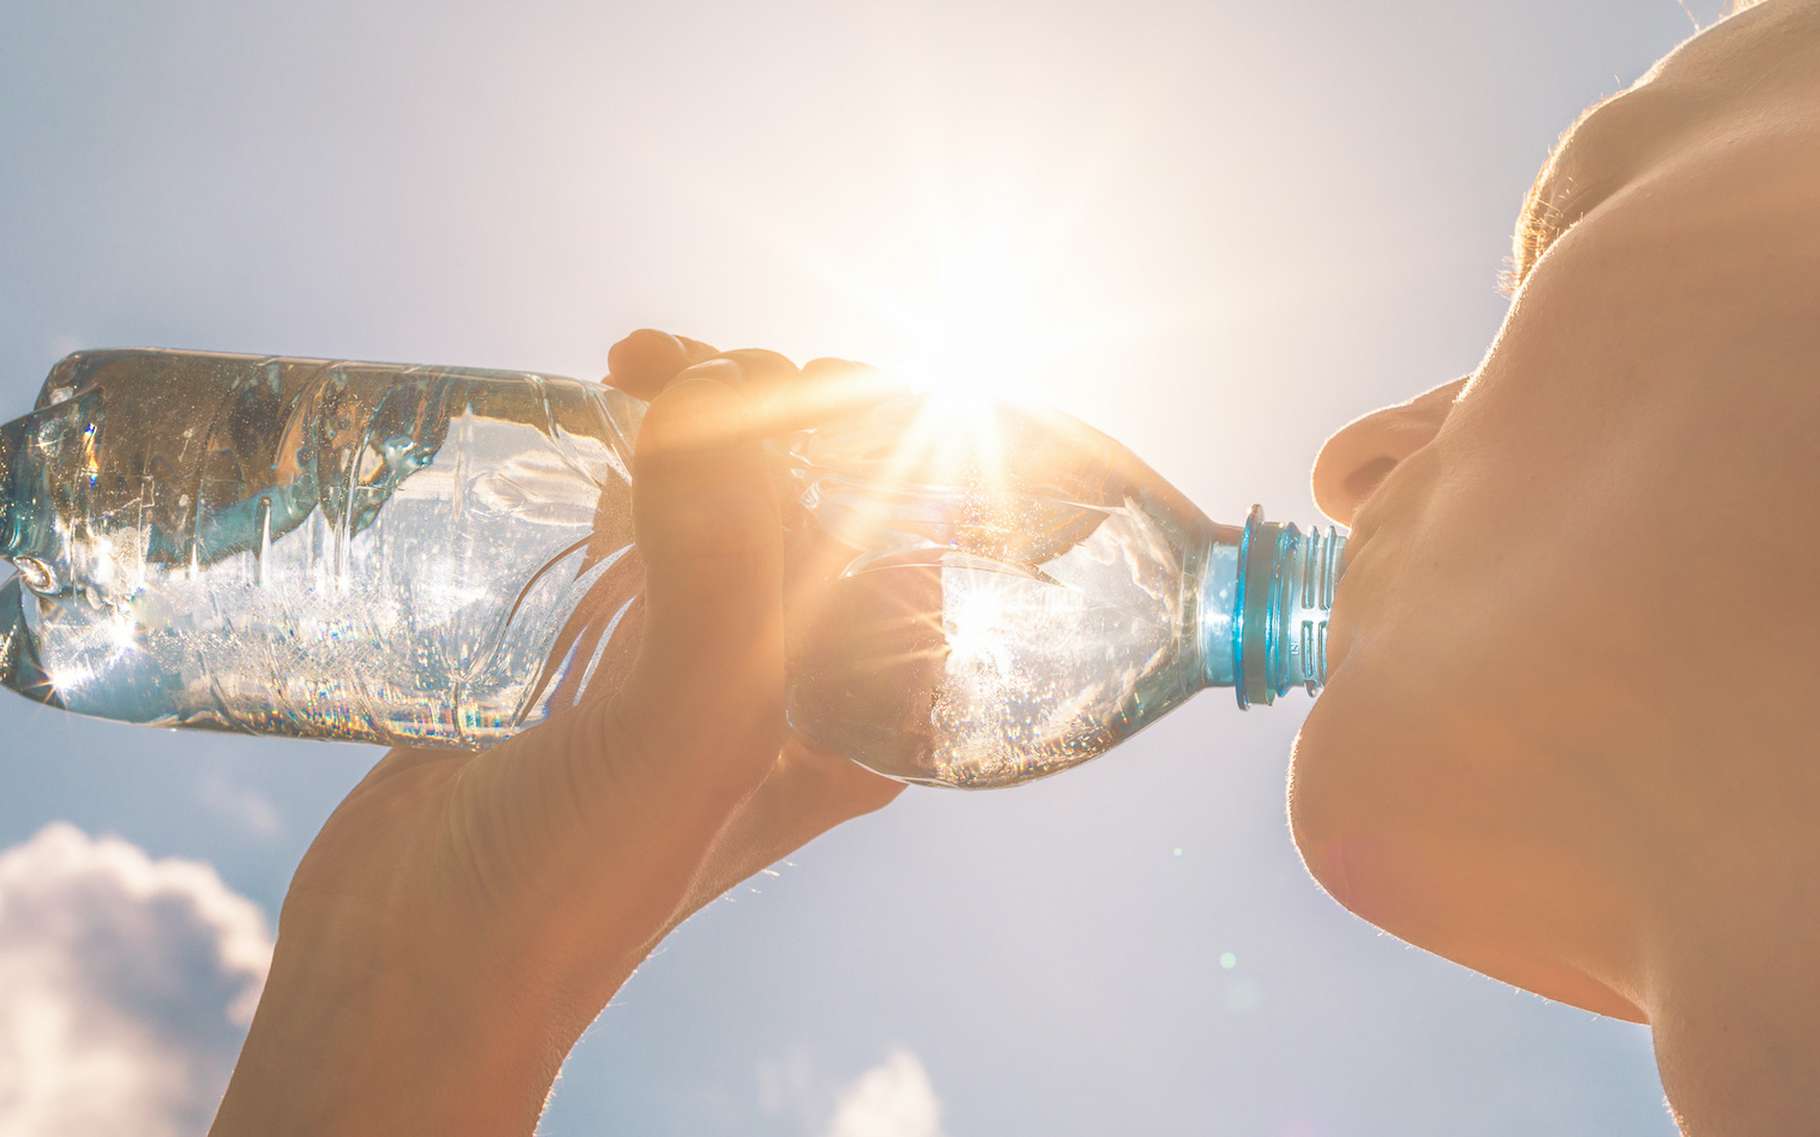 L’eau gazeuse apparait plus désaltérante que l’eau plate. Une sensation fausse qui peut nuire à notre hydratation. © kieferpix, Adobe Stock